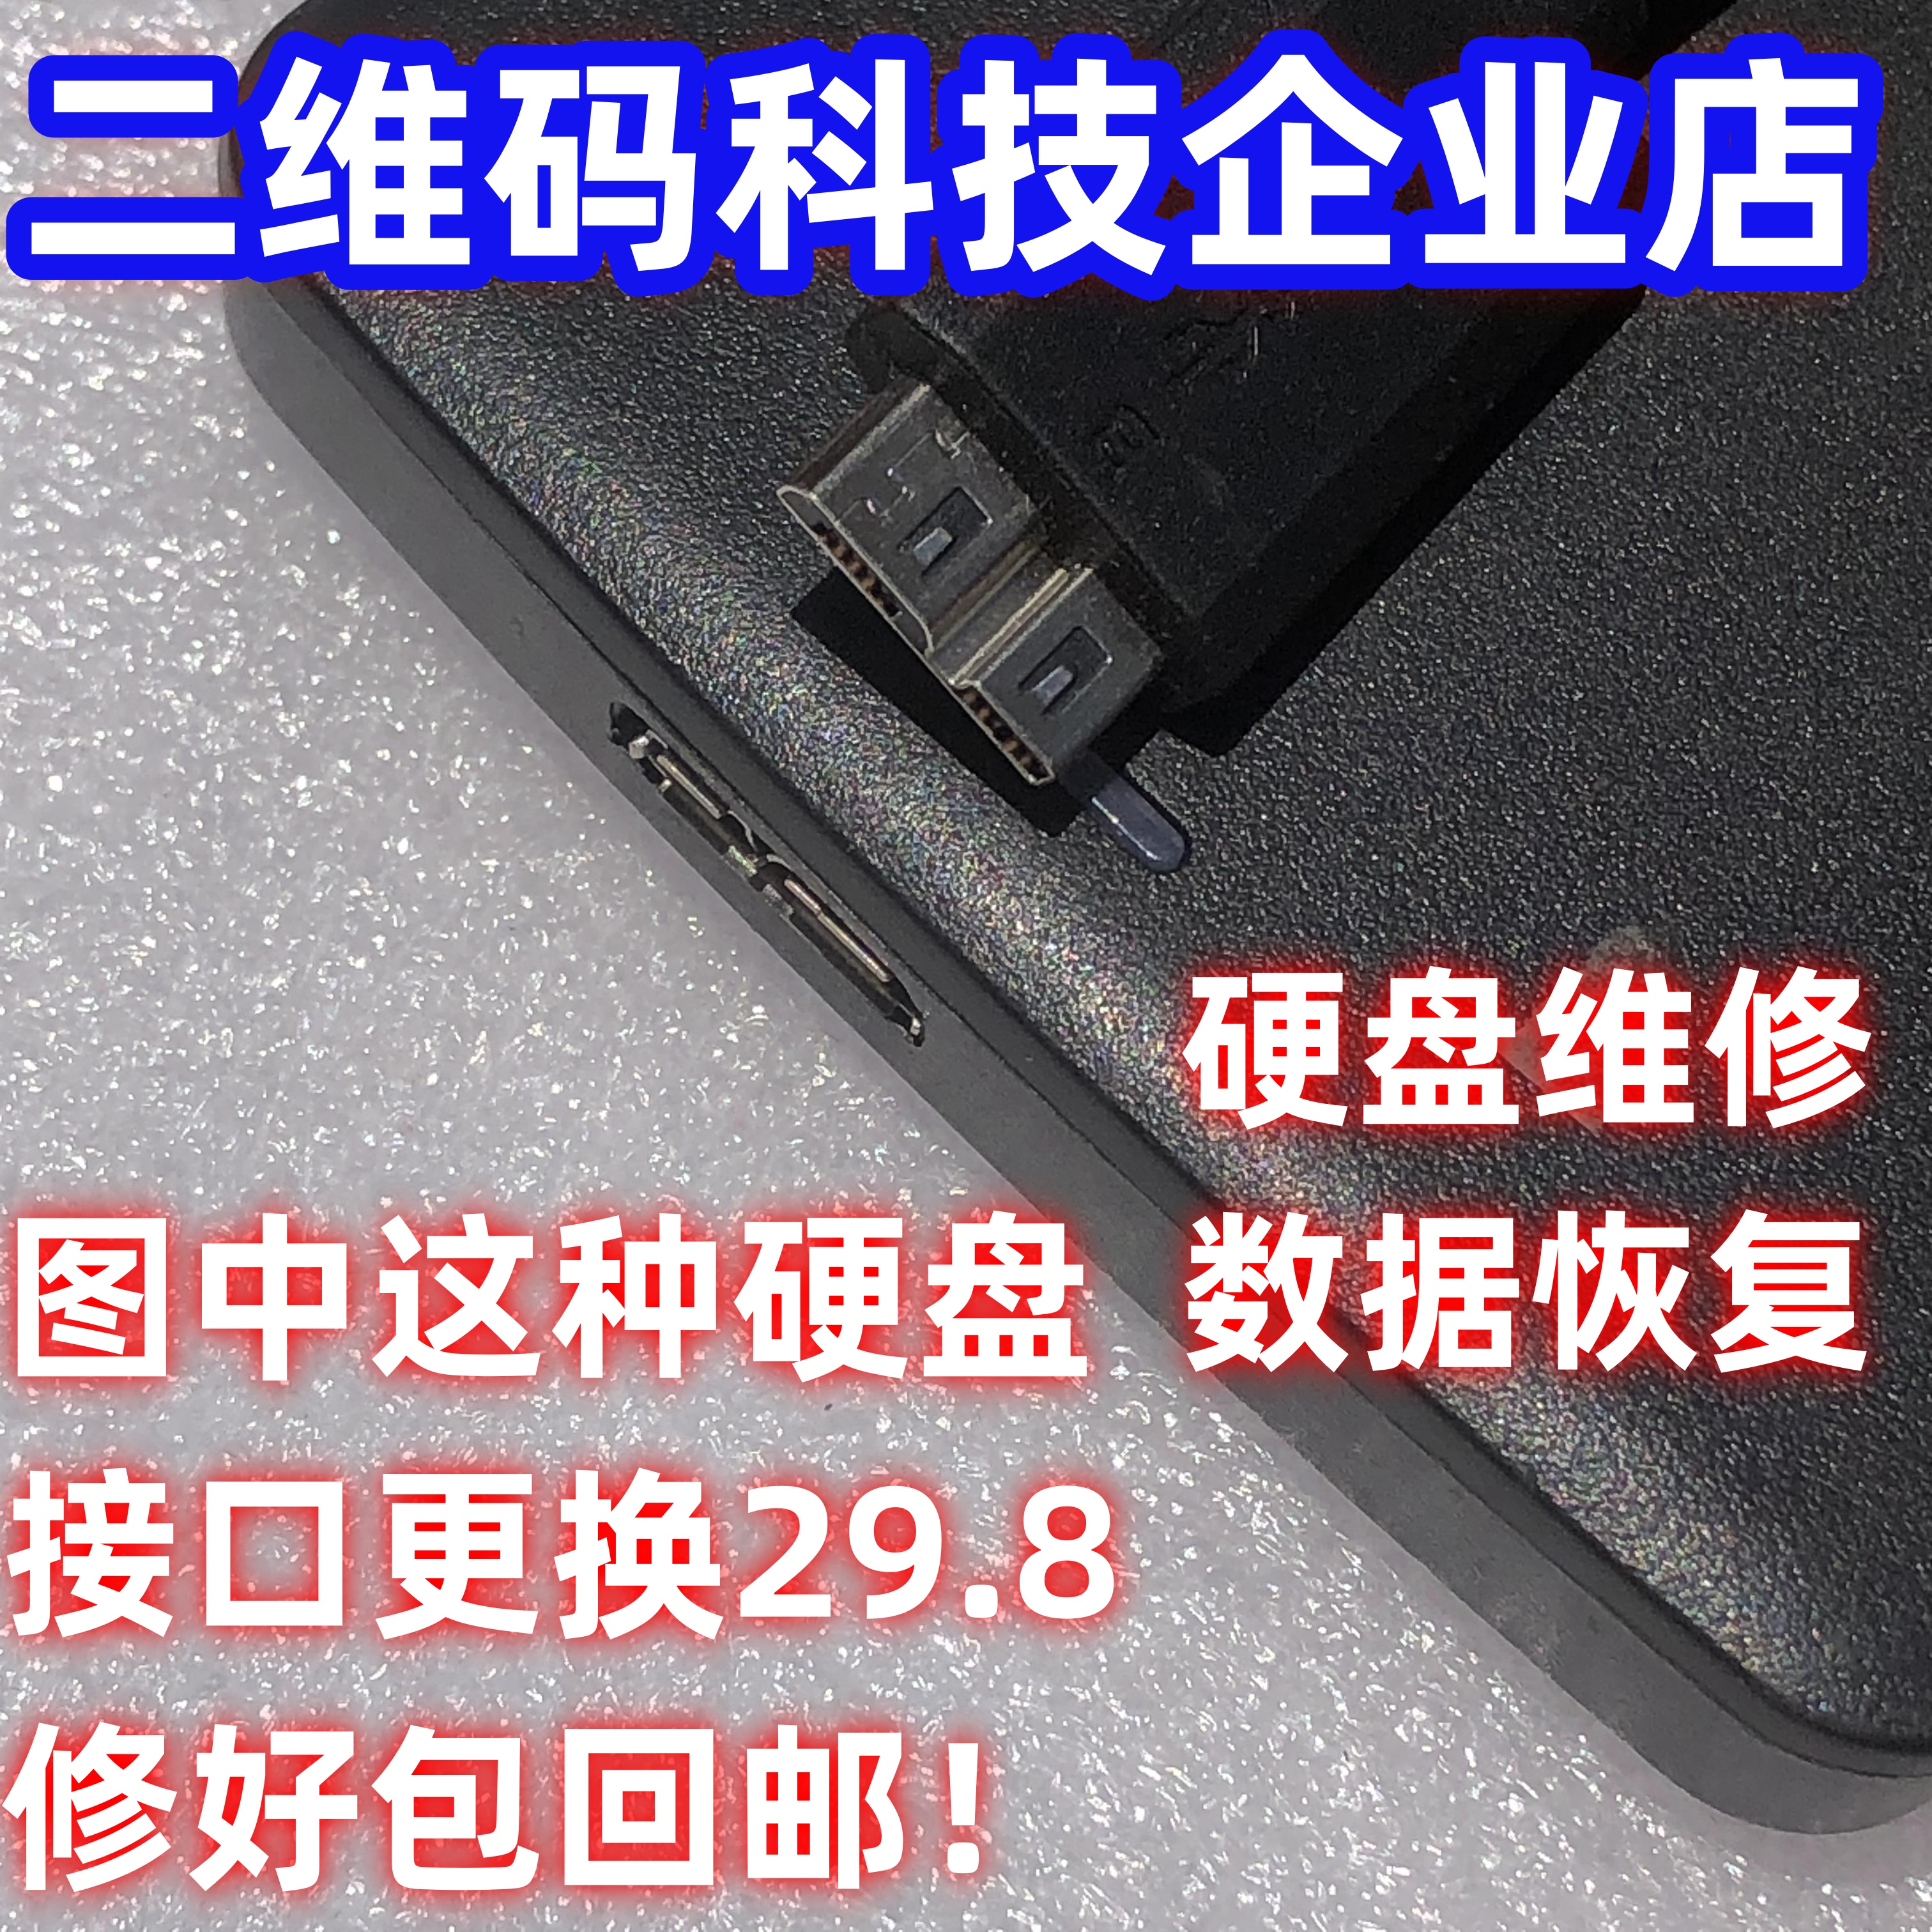 移动硬盘接口维修TYPE-C接口维修USB3.0接口维修专业恢复硬盘数据